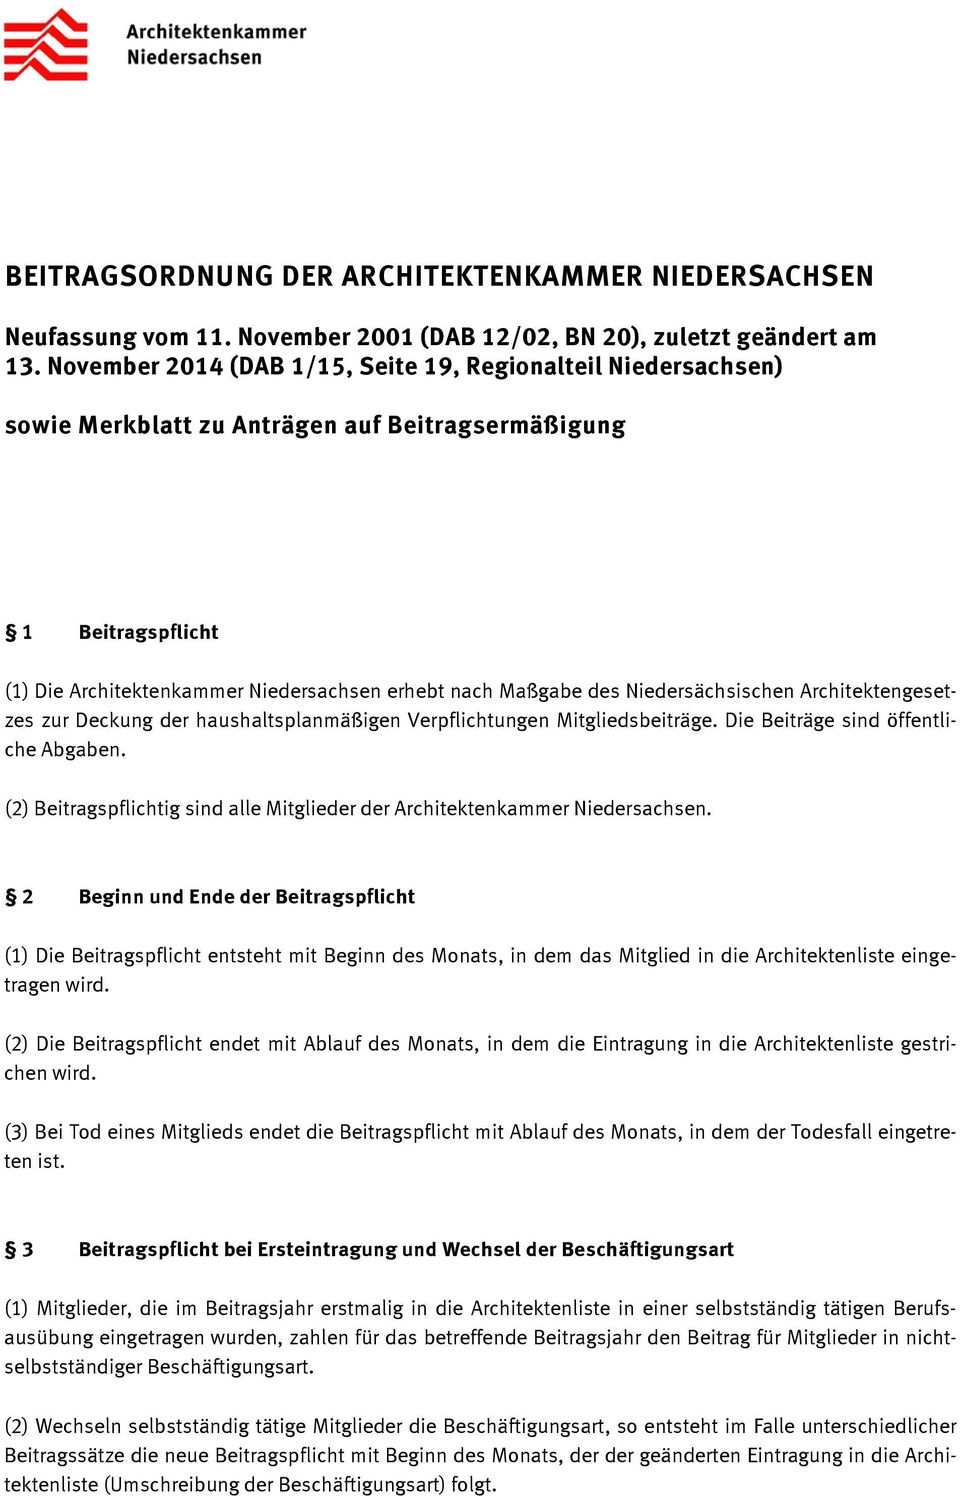 Niedersächsischen Architektengesetzes zur Deckung der haushaltsplanmäßigen Verpflichtungen Mitgliedsbeiträge. Die Beiträge sind öffentliche Abgaben.